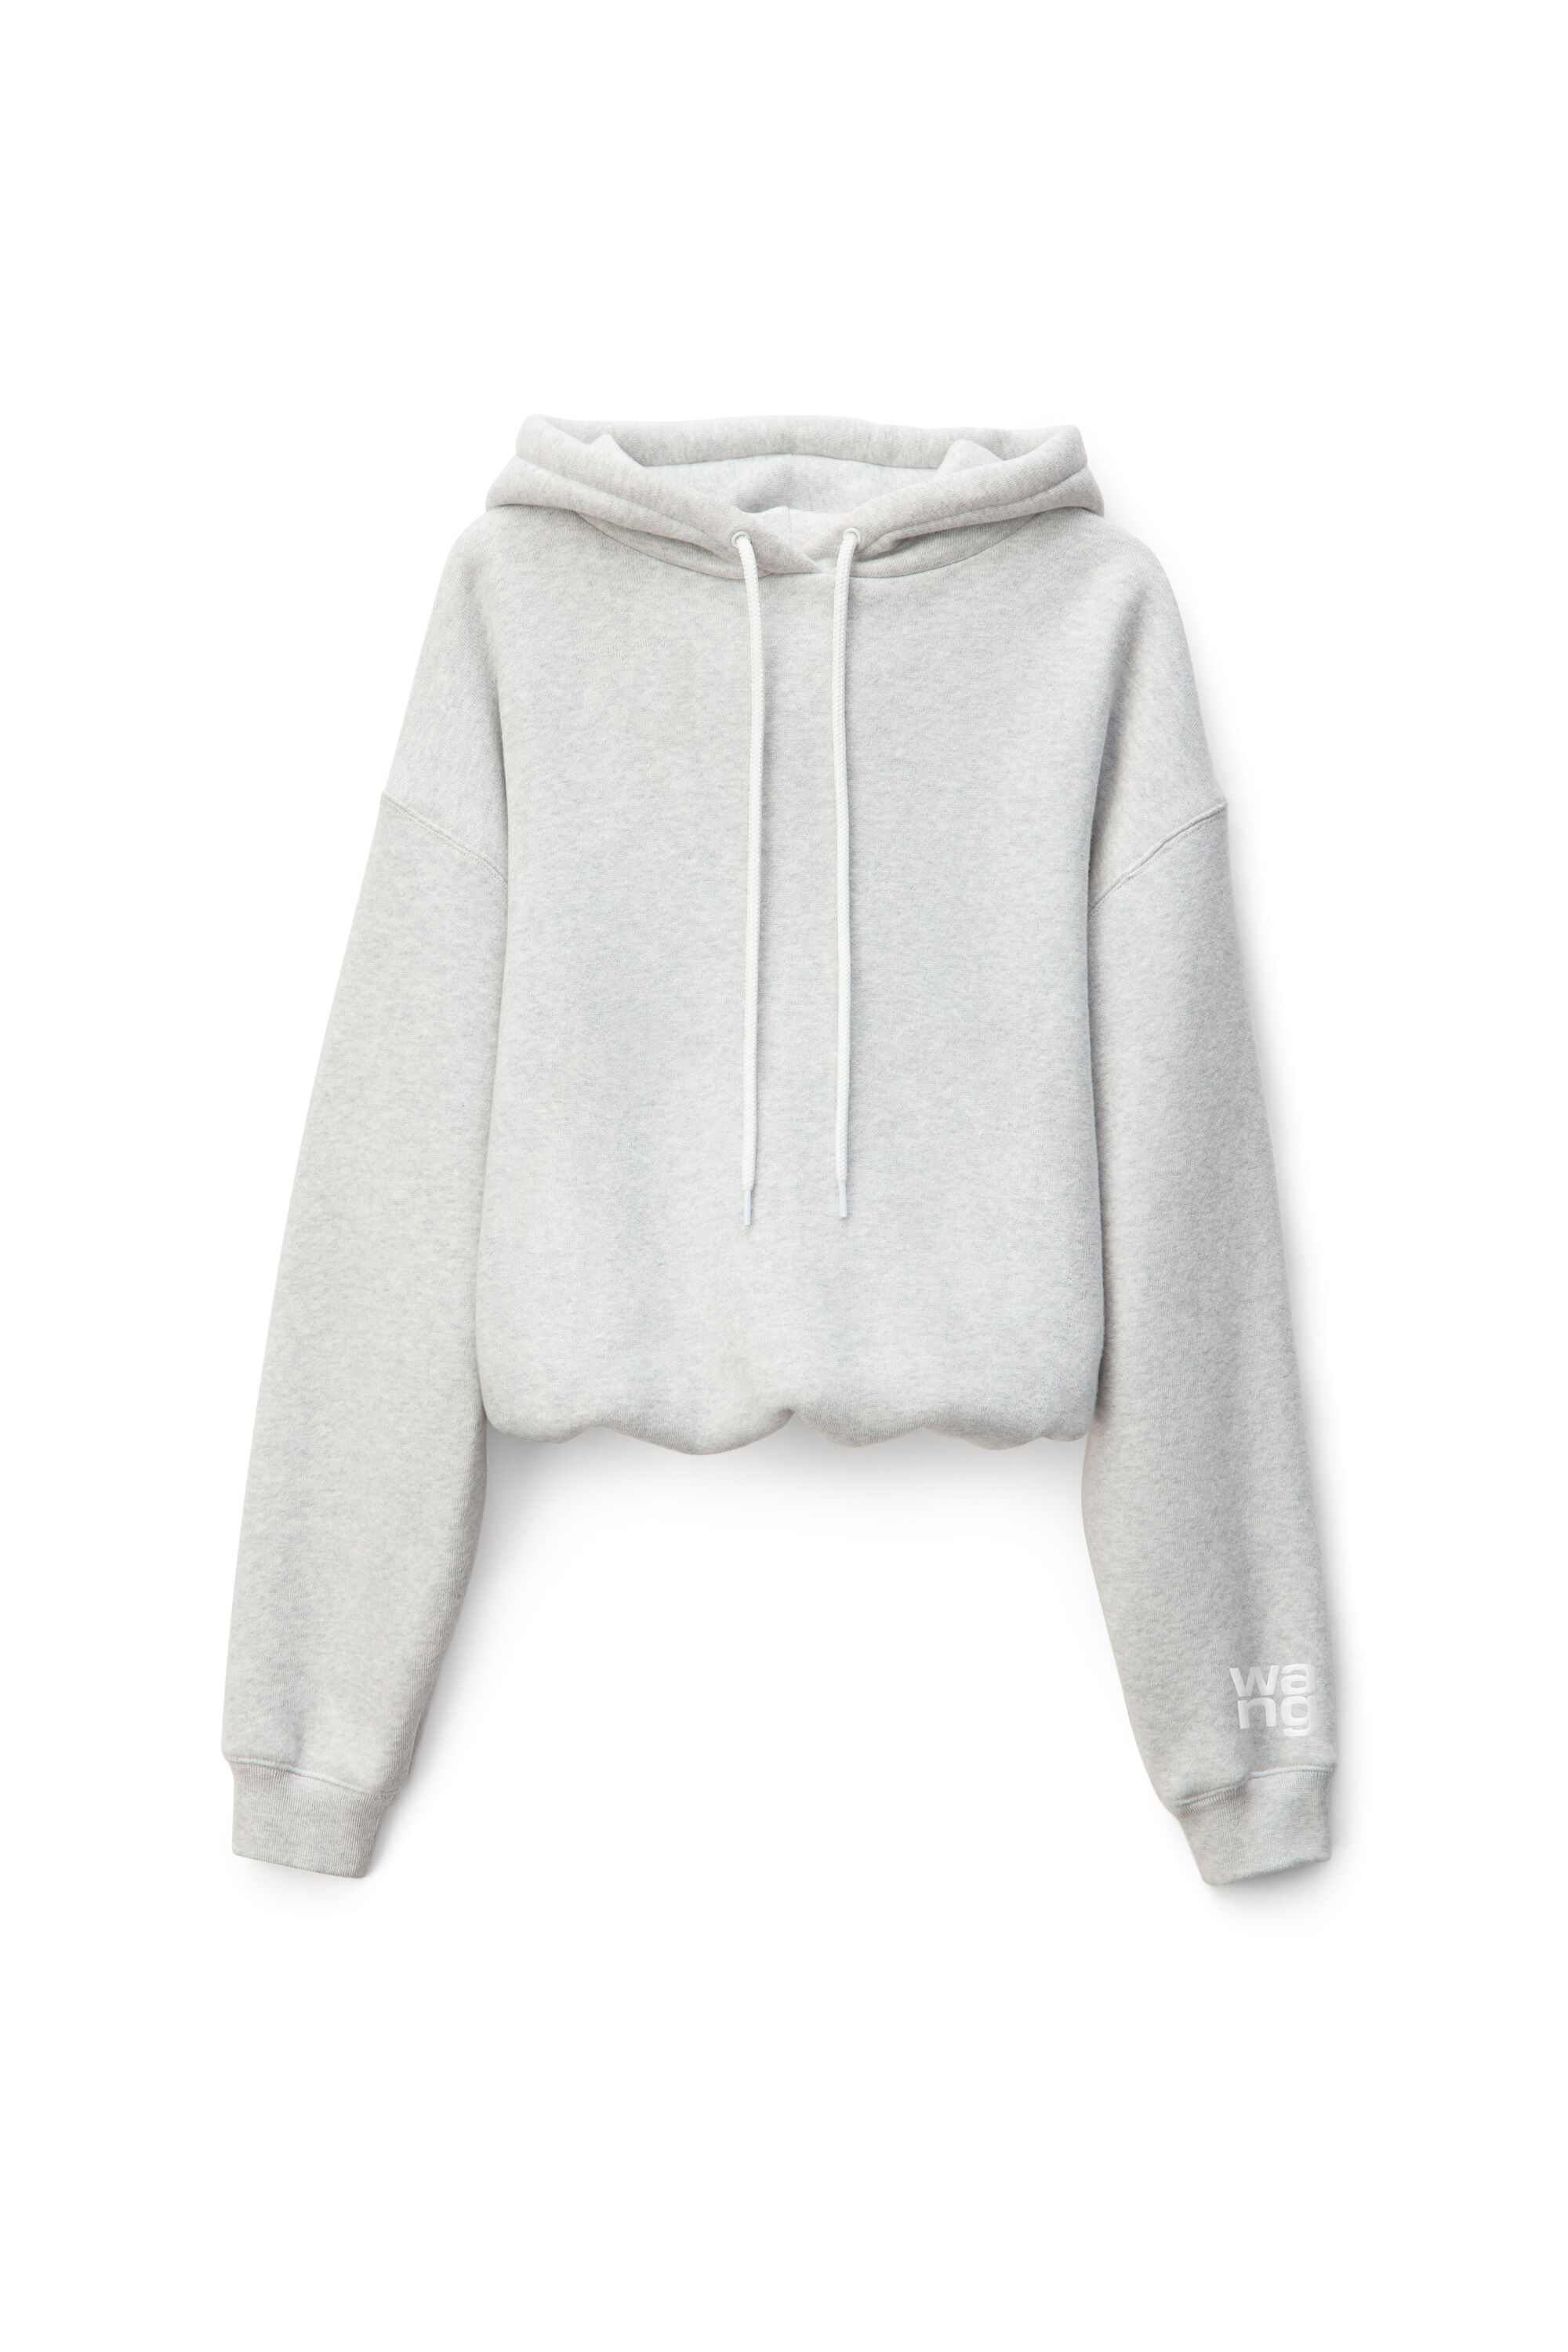 alexander wang hoodie grey